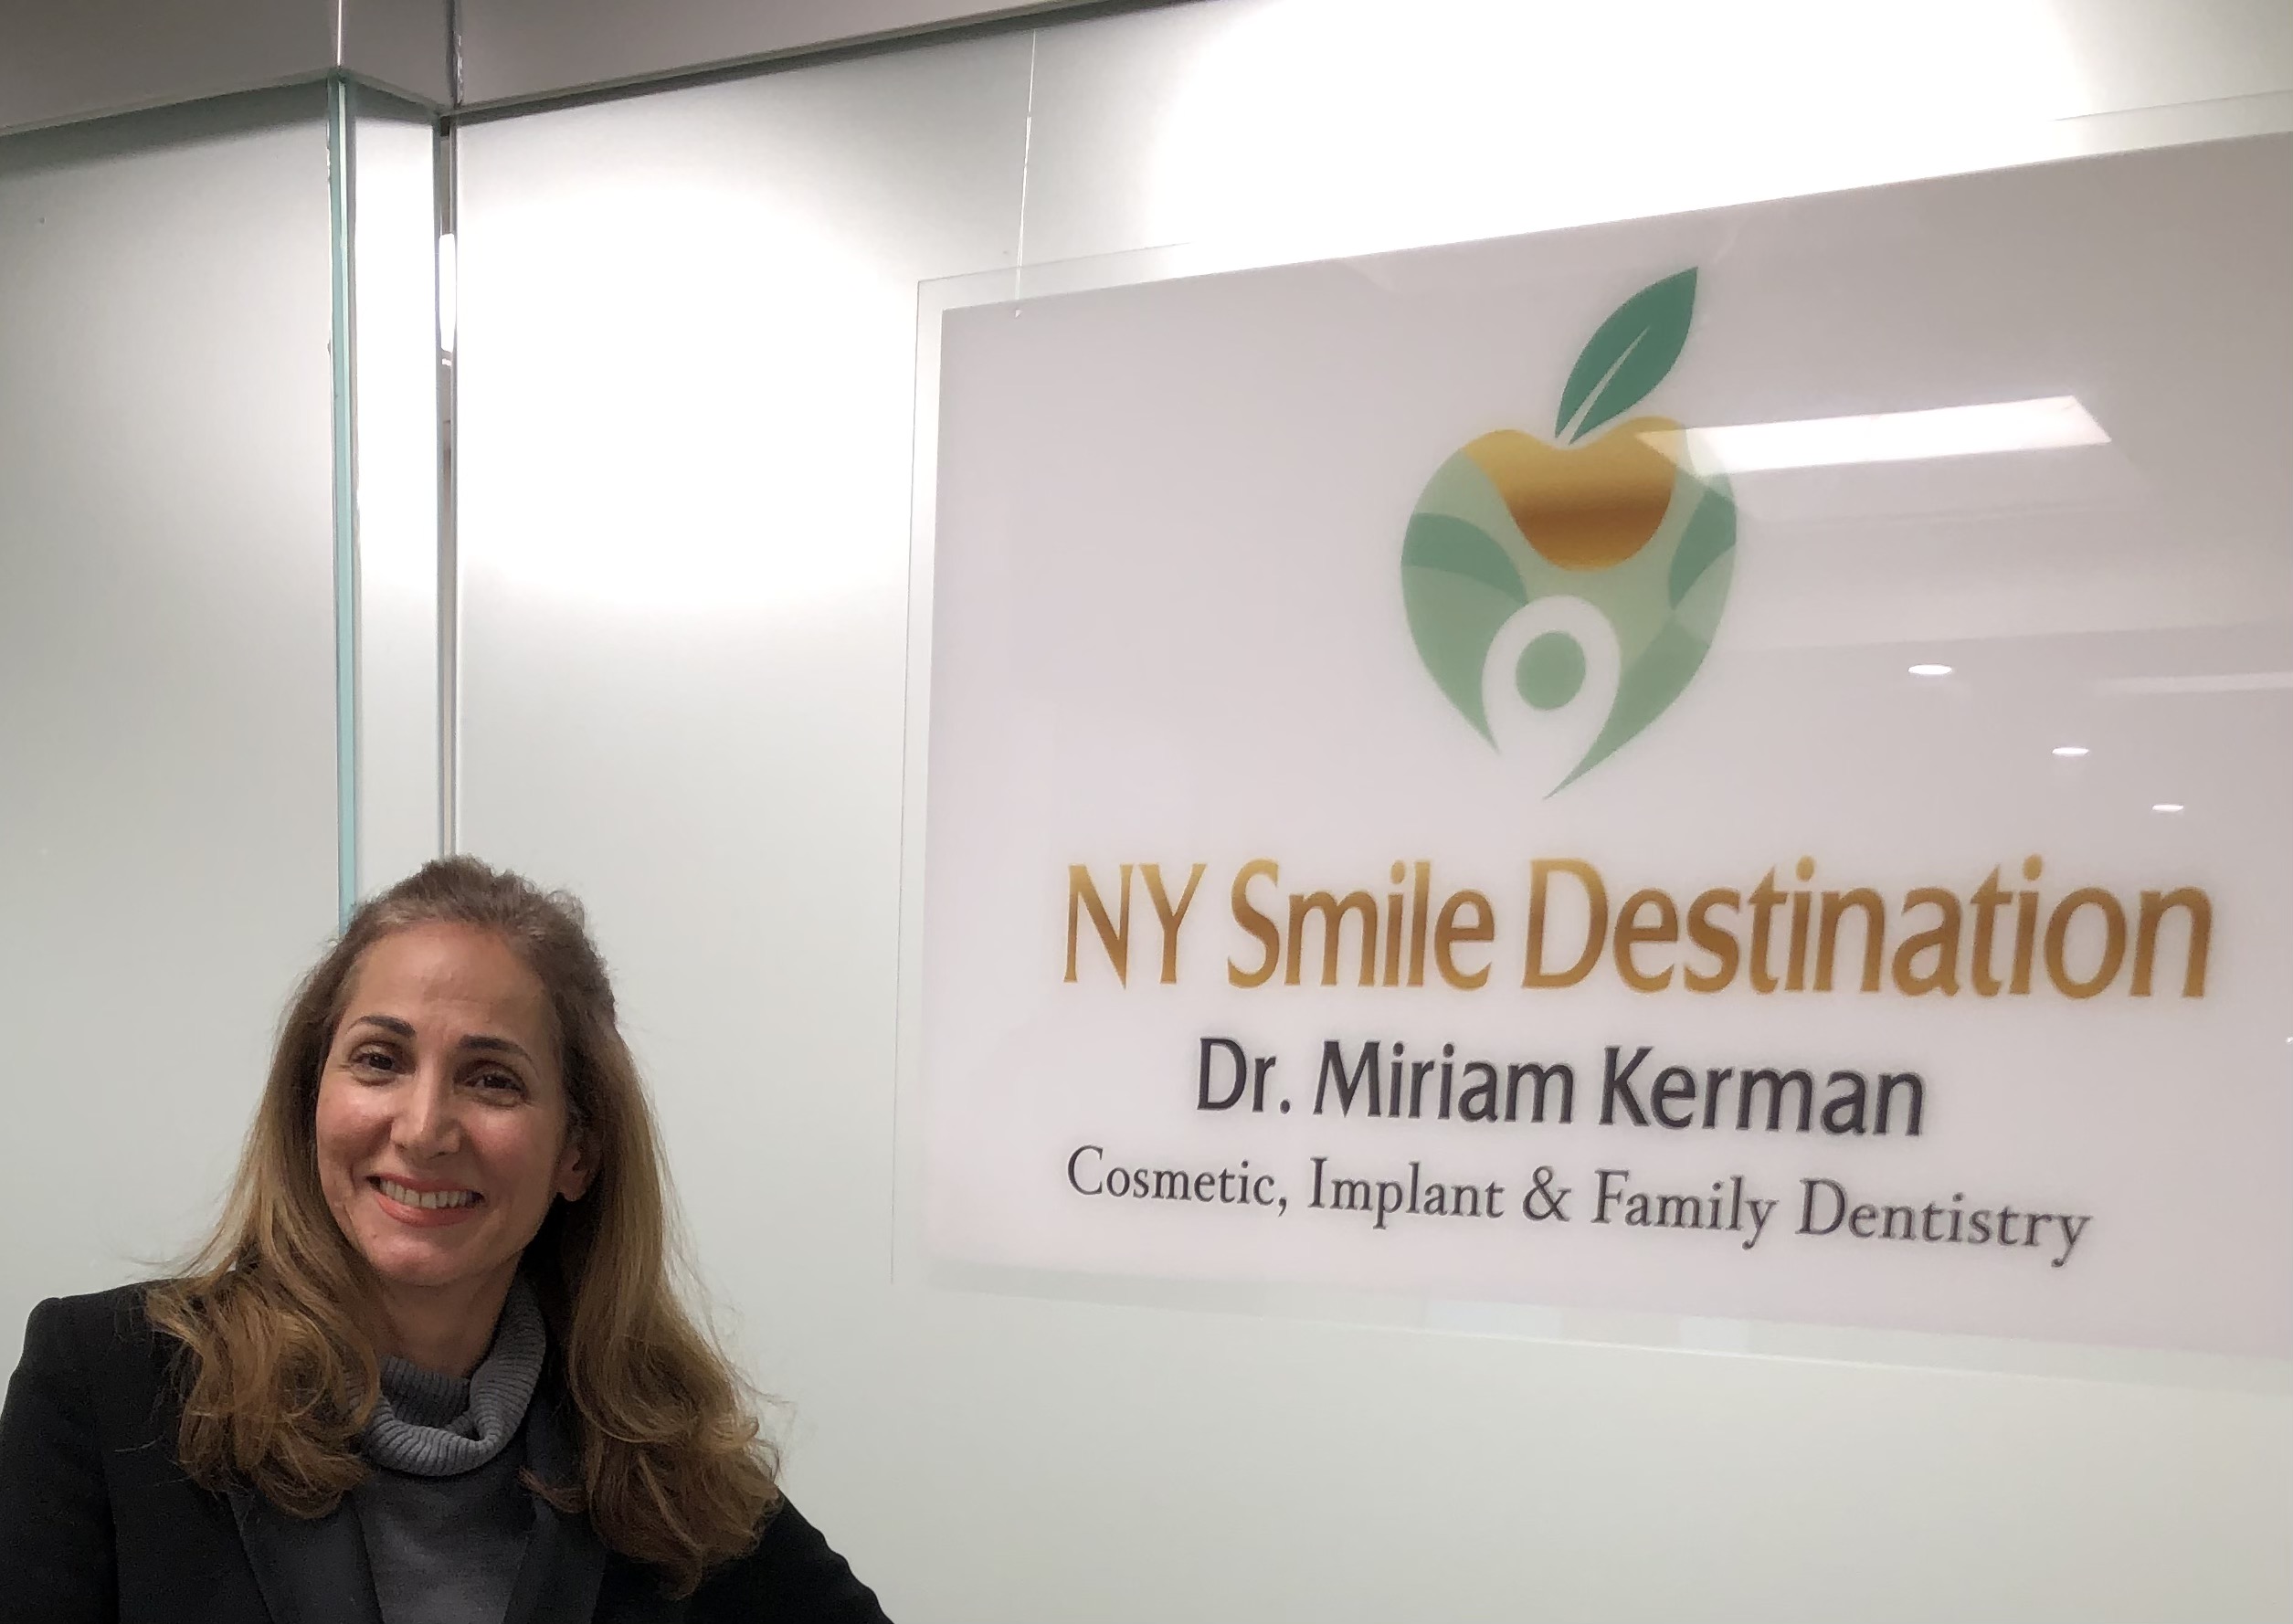 Dr Miriam Kerman